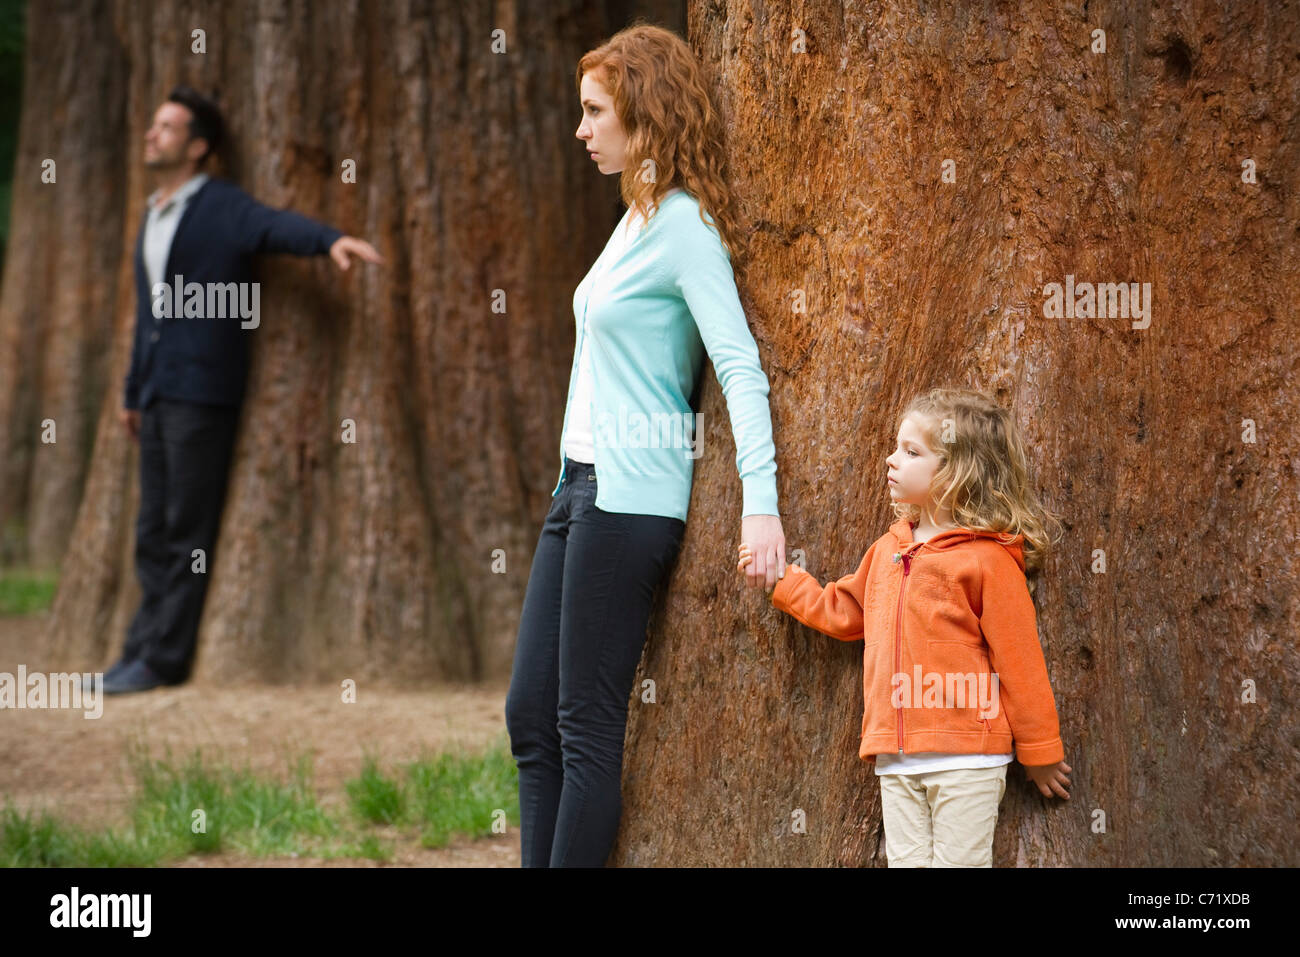 Mère et fille leaning against tree, père séparé debout en arrière-plan Banque D'Images